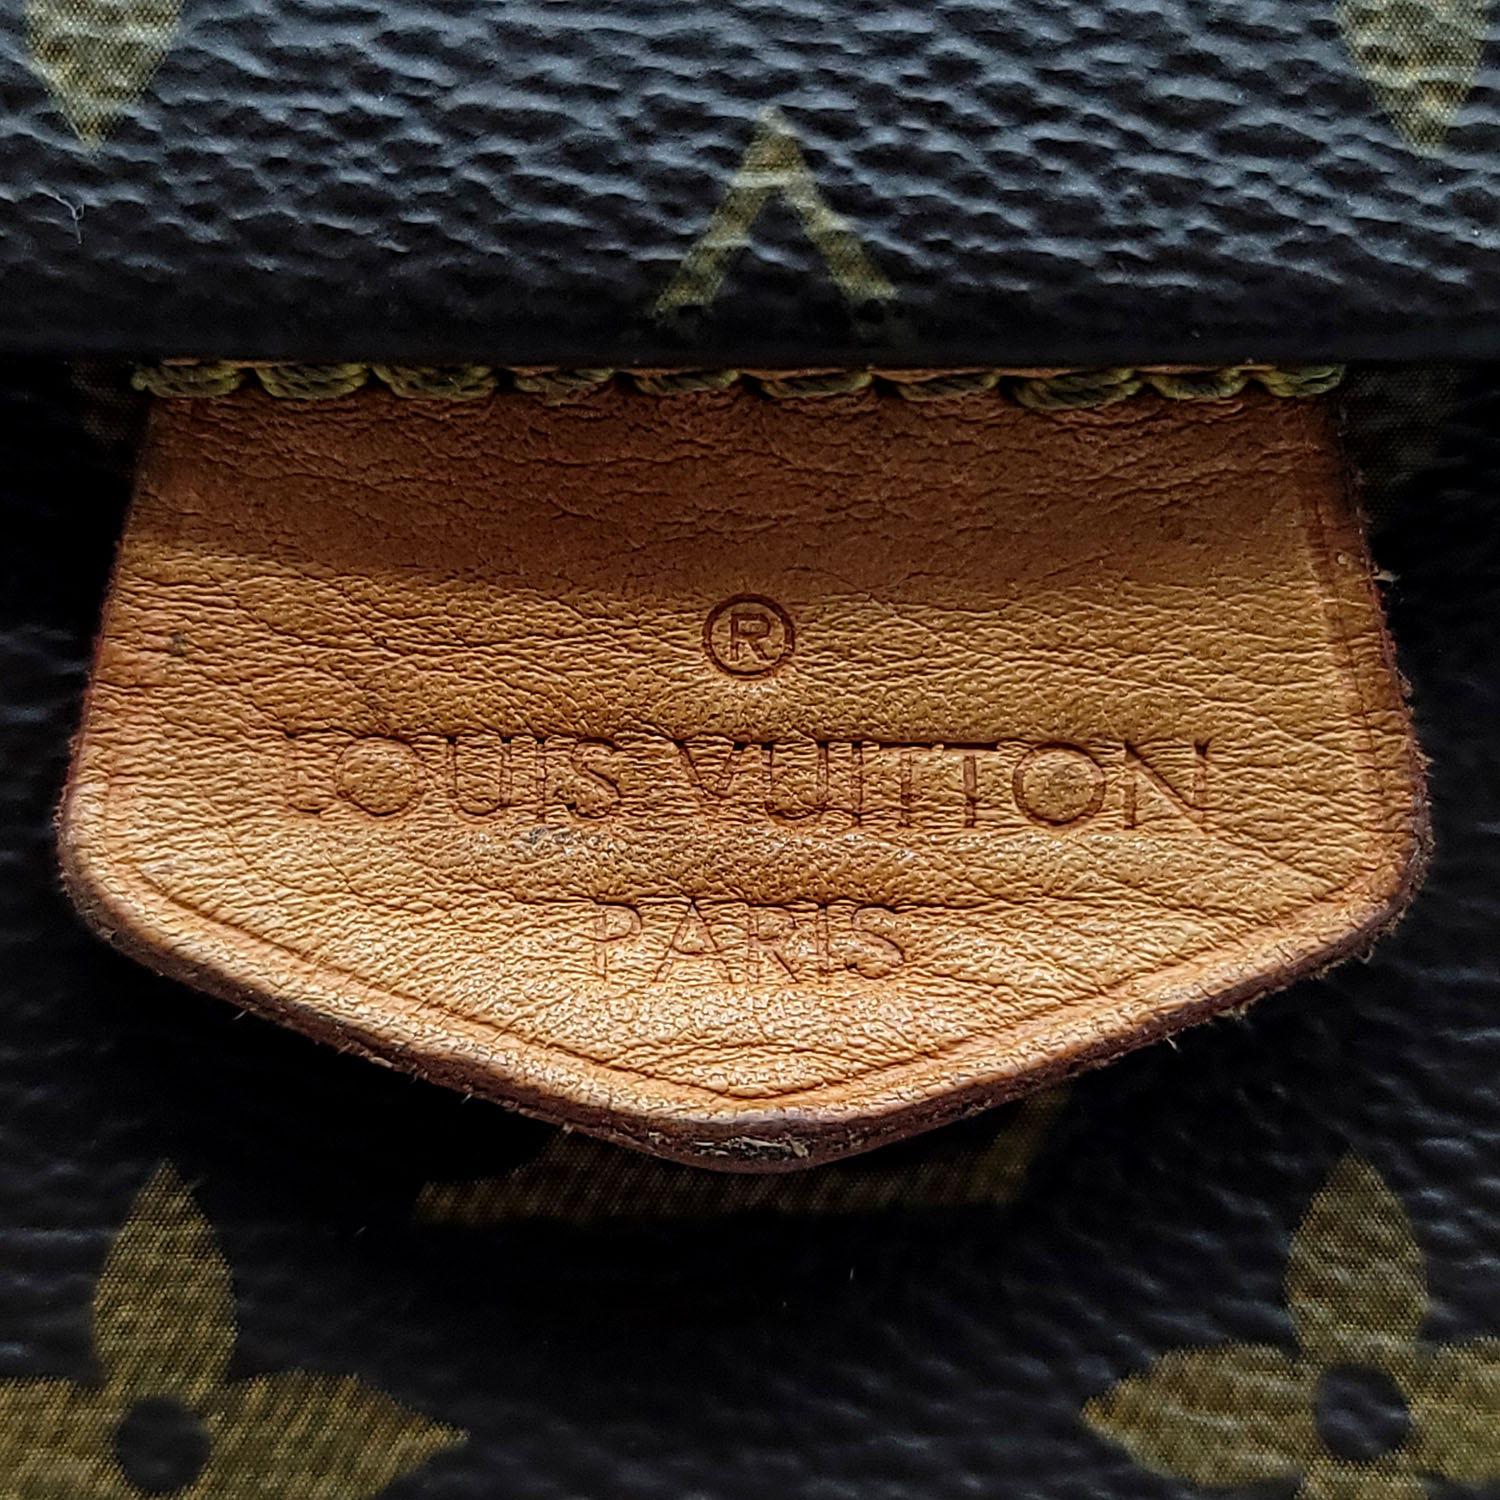 Louis Vuitton Monogram Shadow Discovery Bumbag - Tín đồ hàng hiệu